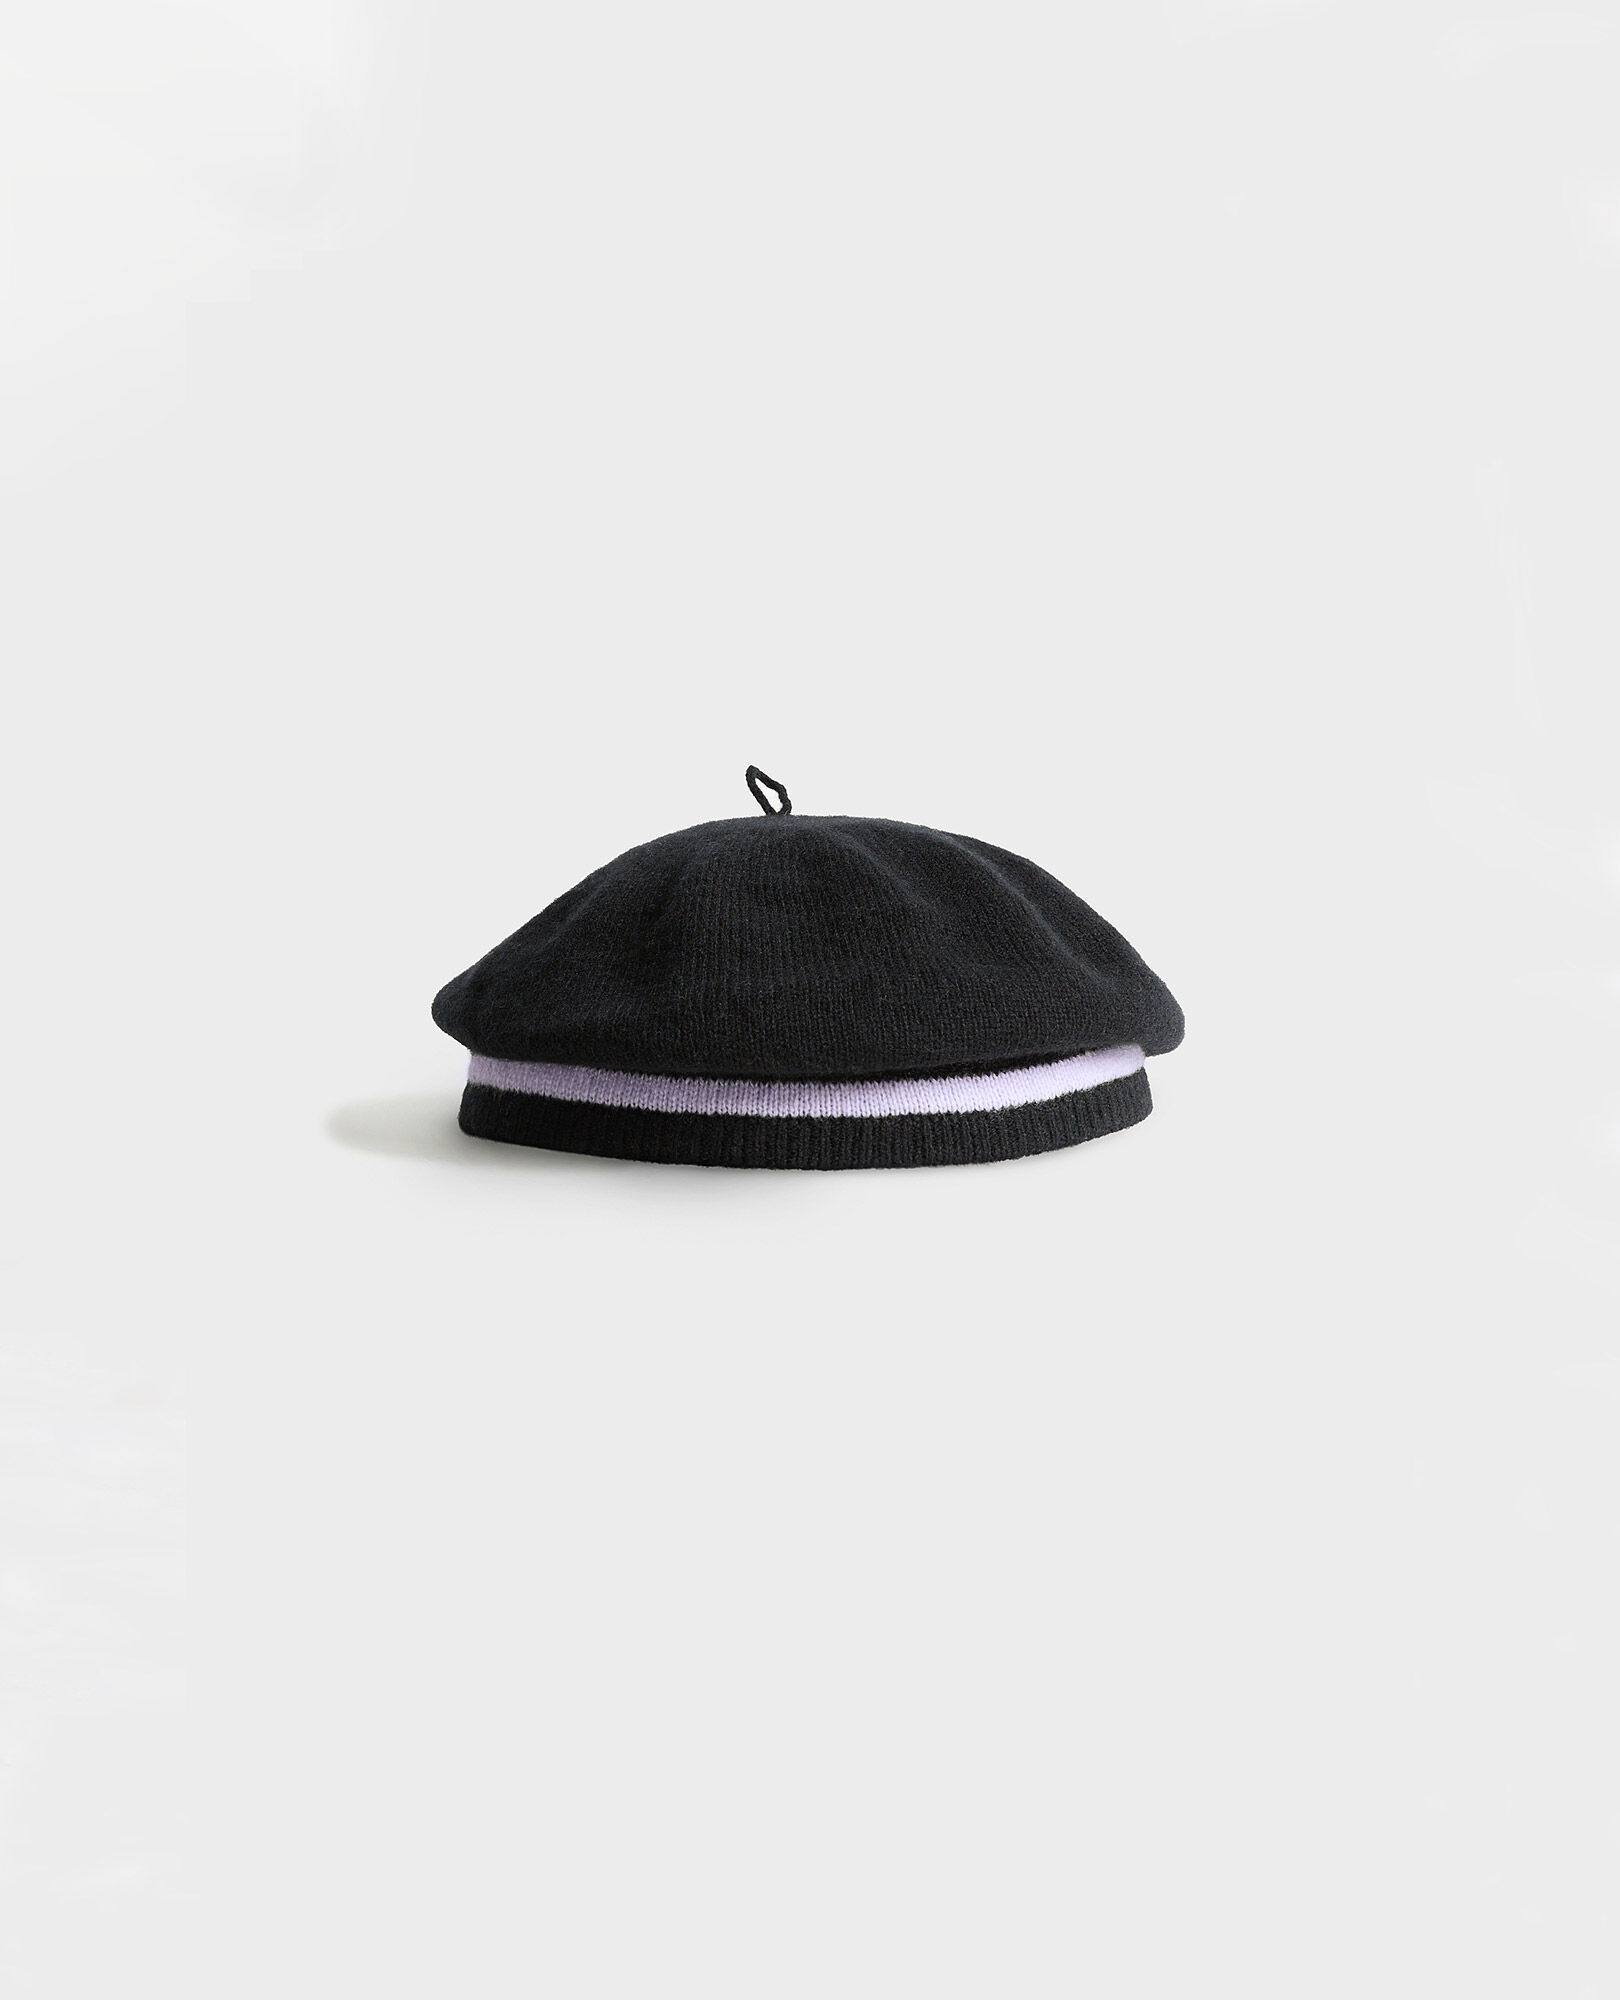 Cashmere beret Stripe black lilac Mions